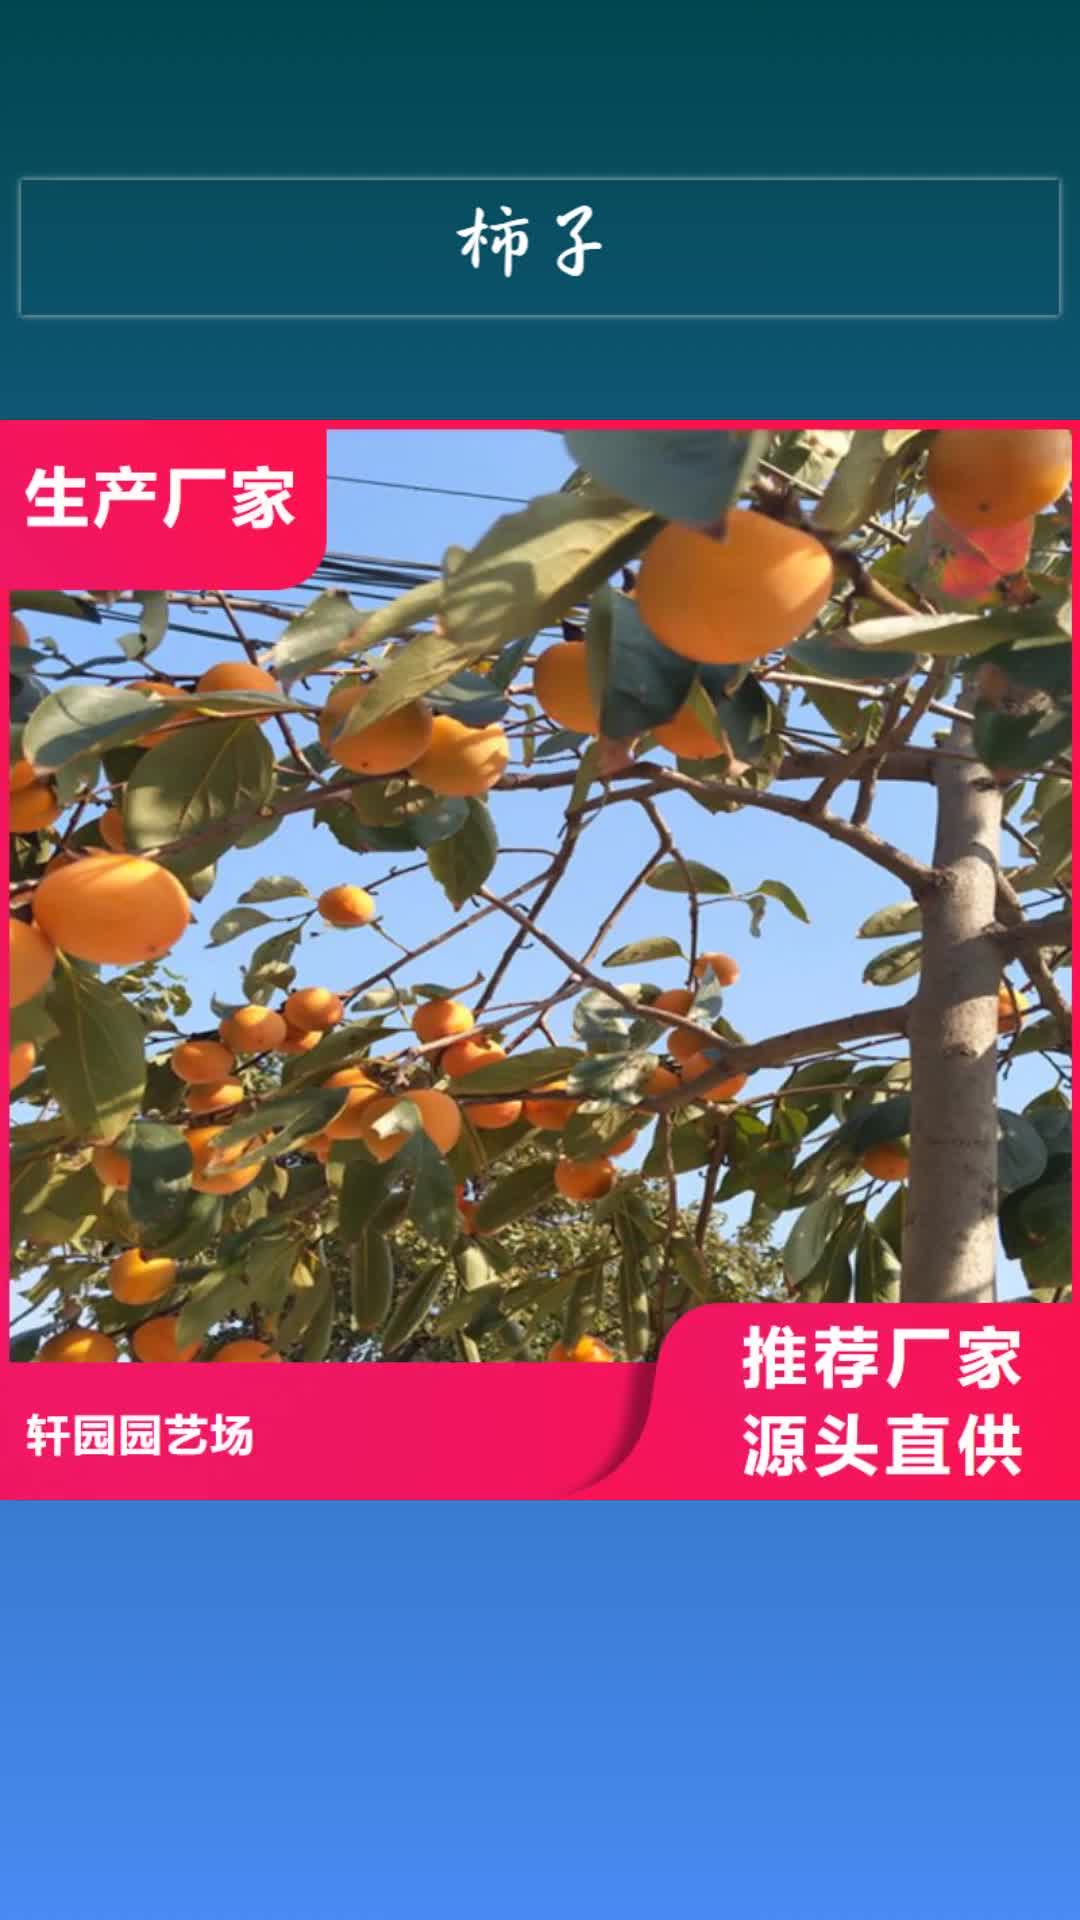 广元【柿子】 石榴树工艺成熟